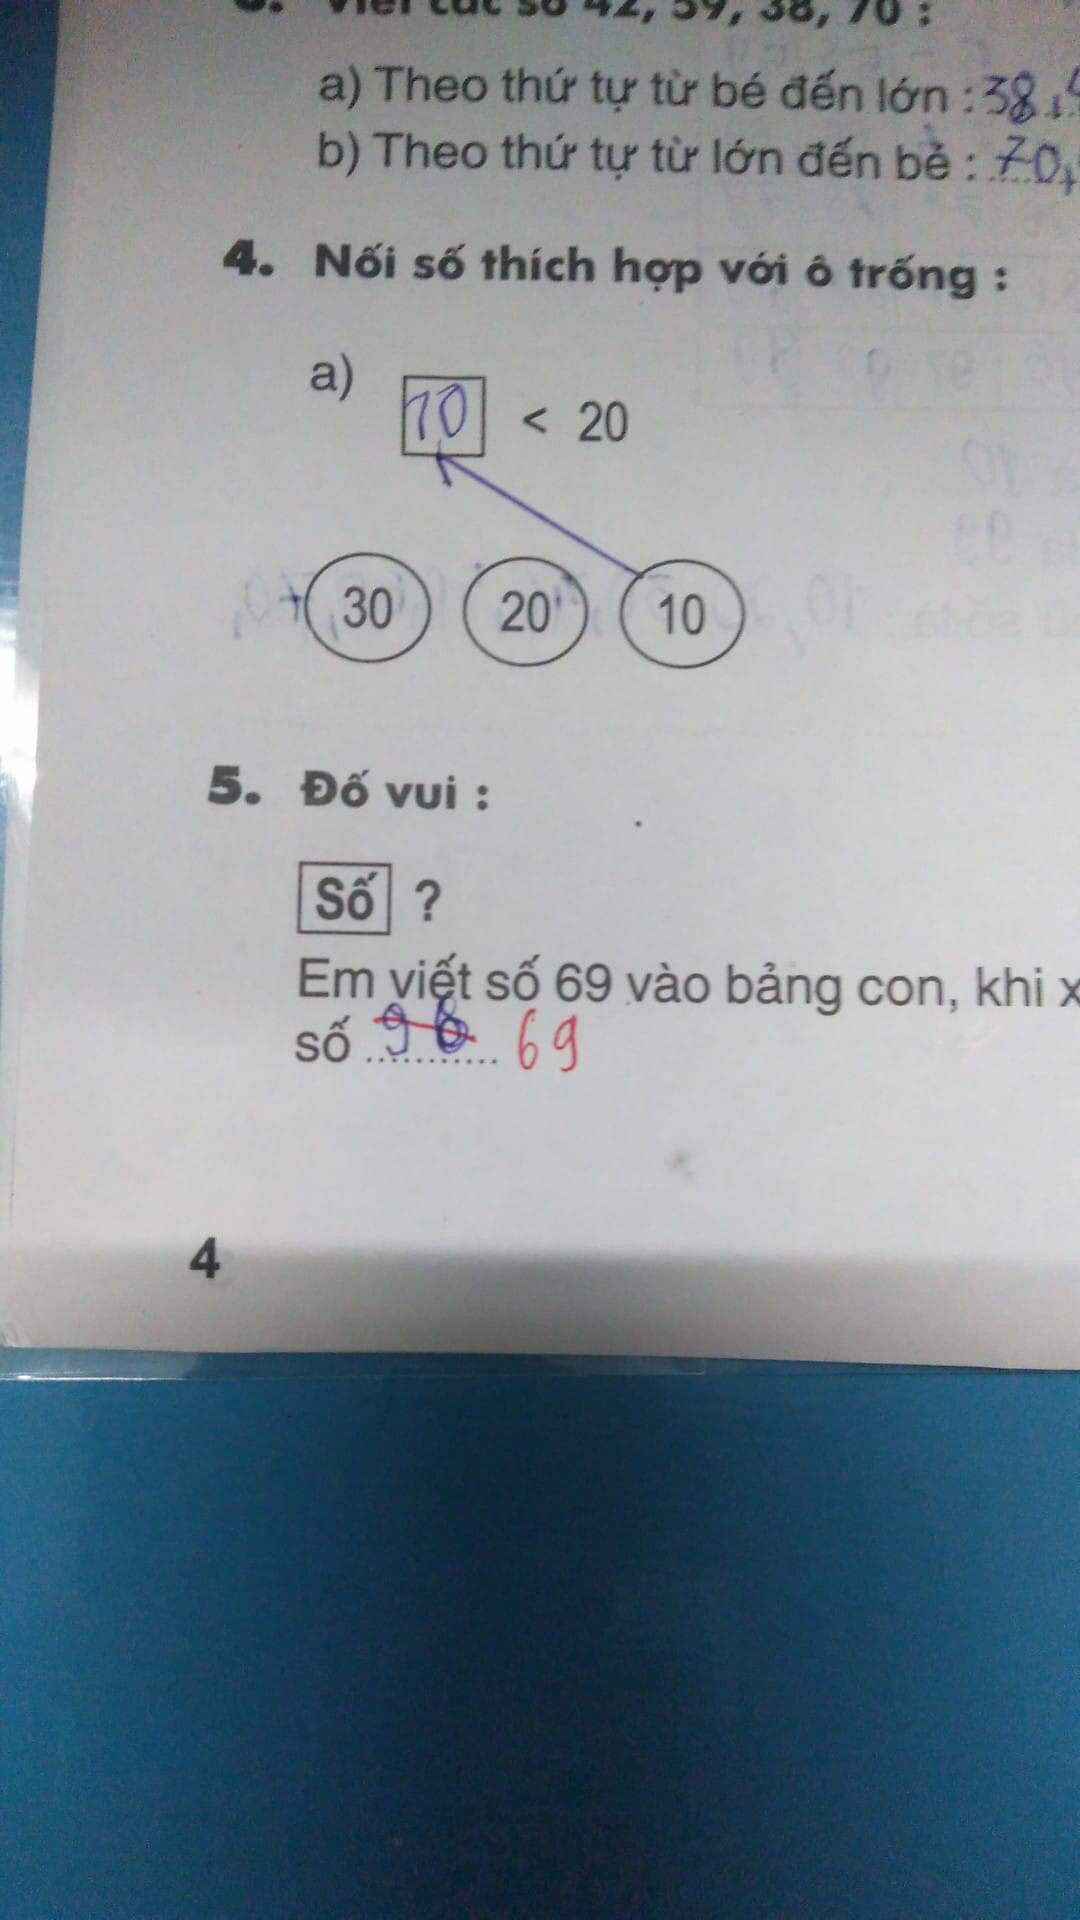 Bài Toán: Viết số 69 ra bảng, xoay ngược lại được số bao nhiêu?, học sinh nói 69, cô giáo bảo 96 - Ảnh 2.